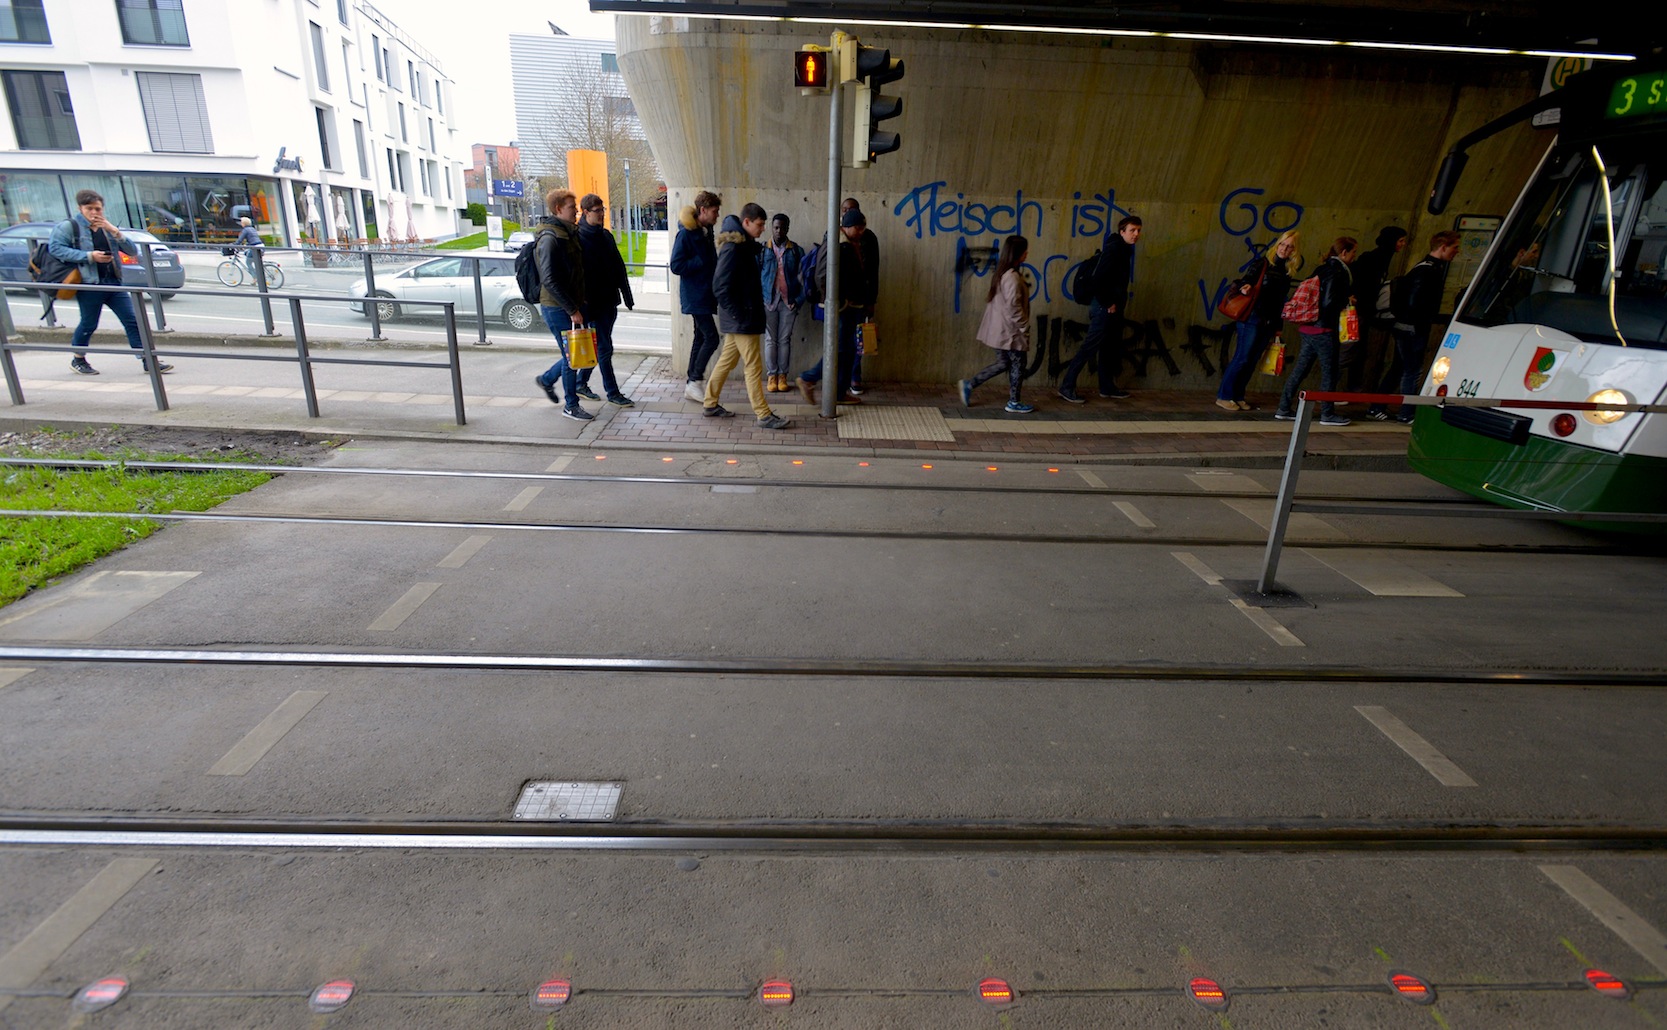 In Augsburg warnen rote LED-Leuchten im Boden abgelenkte Fußgänger, die auf ihr Smartphone starren, vor der Straßenbahn.